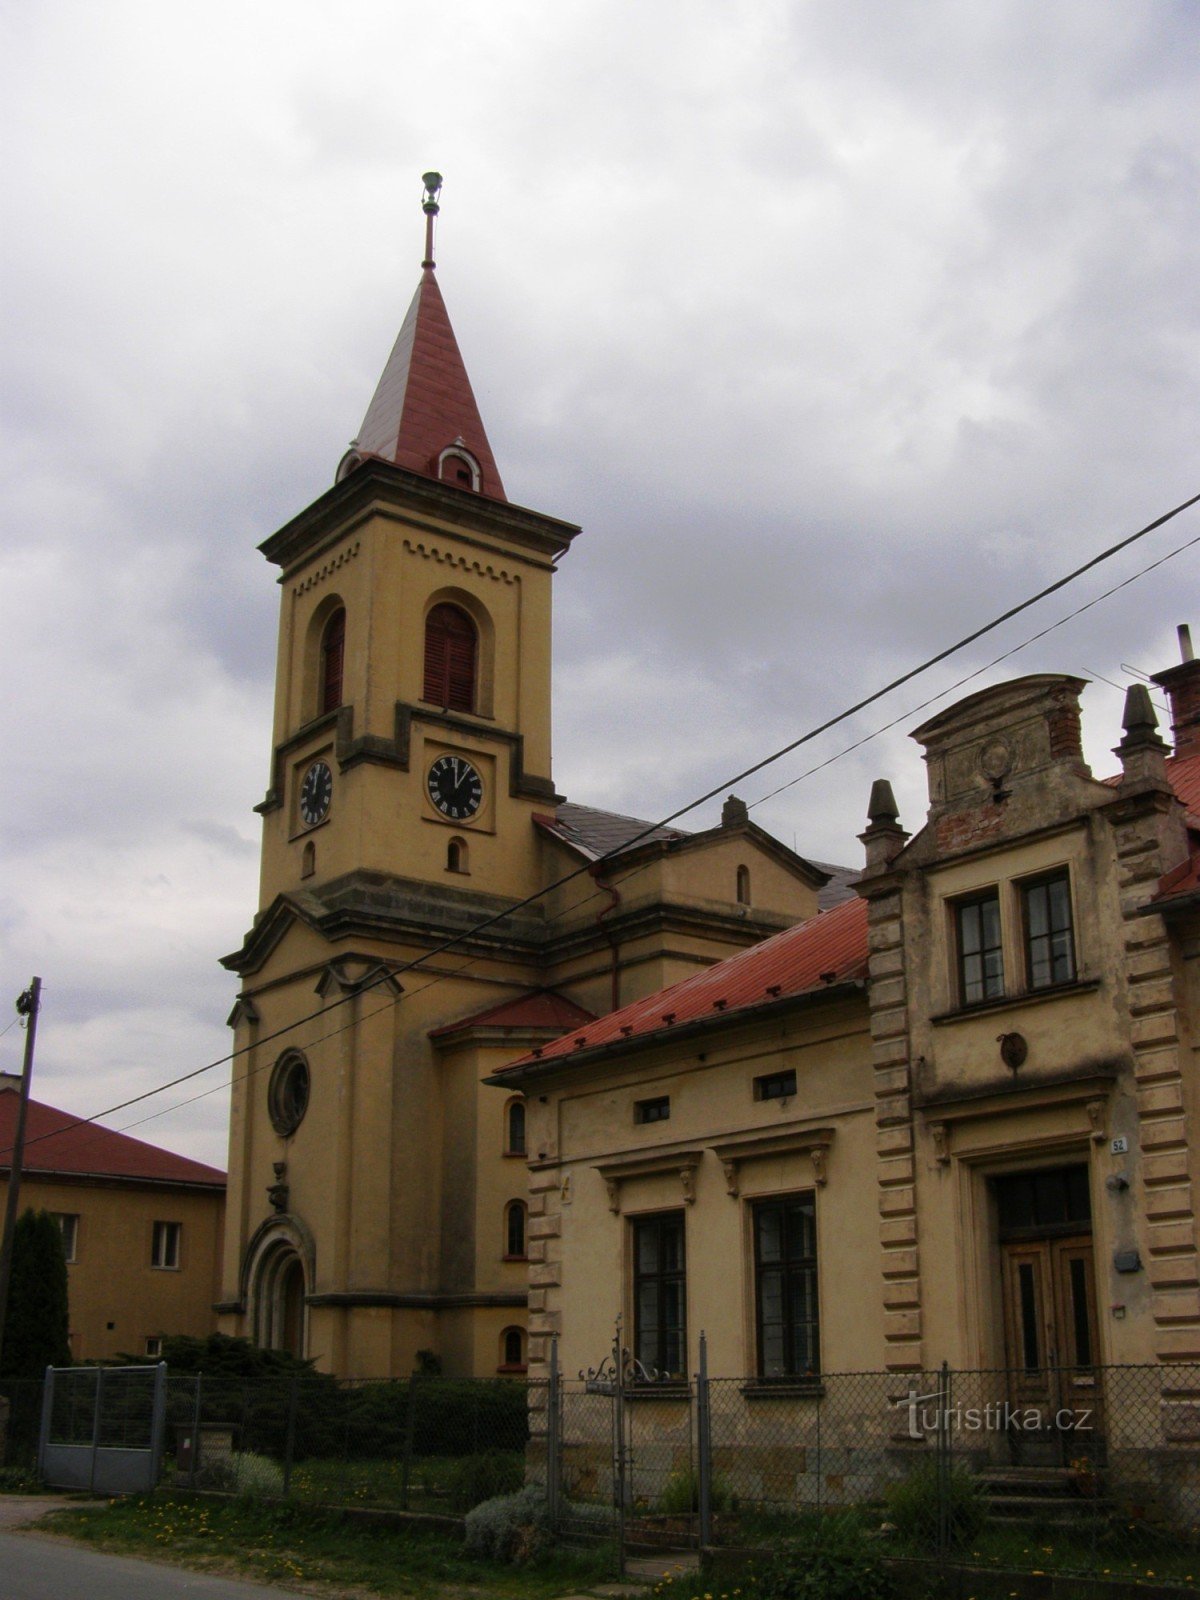 Semonice - Biserica Evanghelică a Fraților Cehi